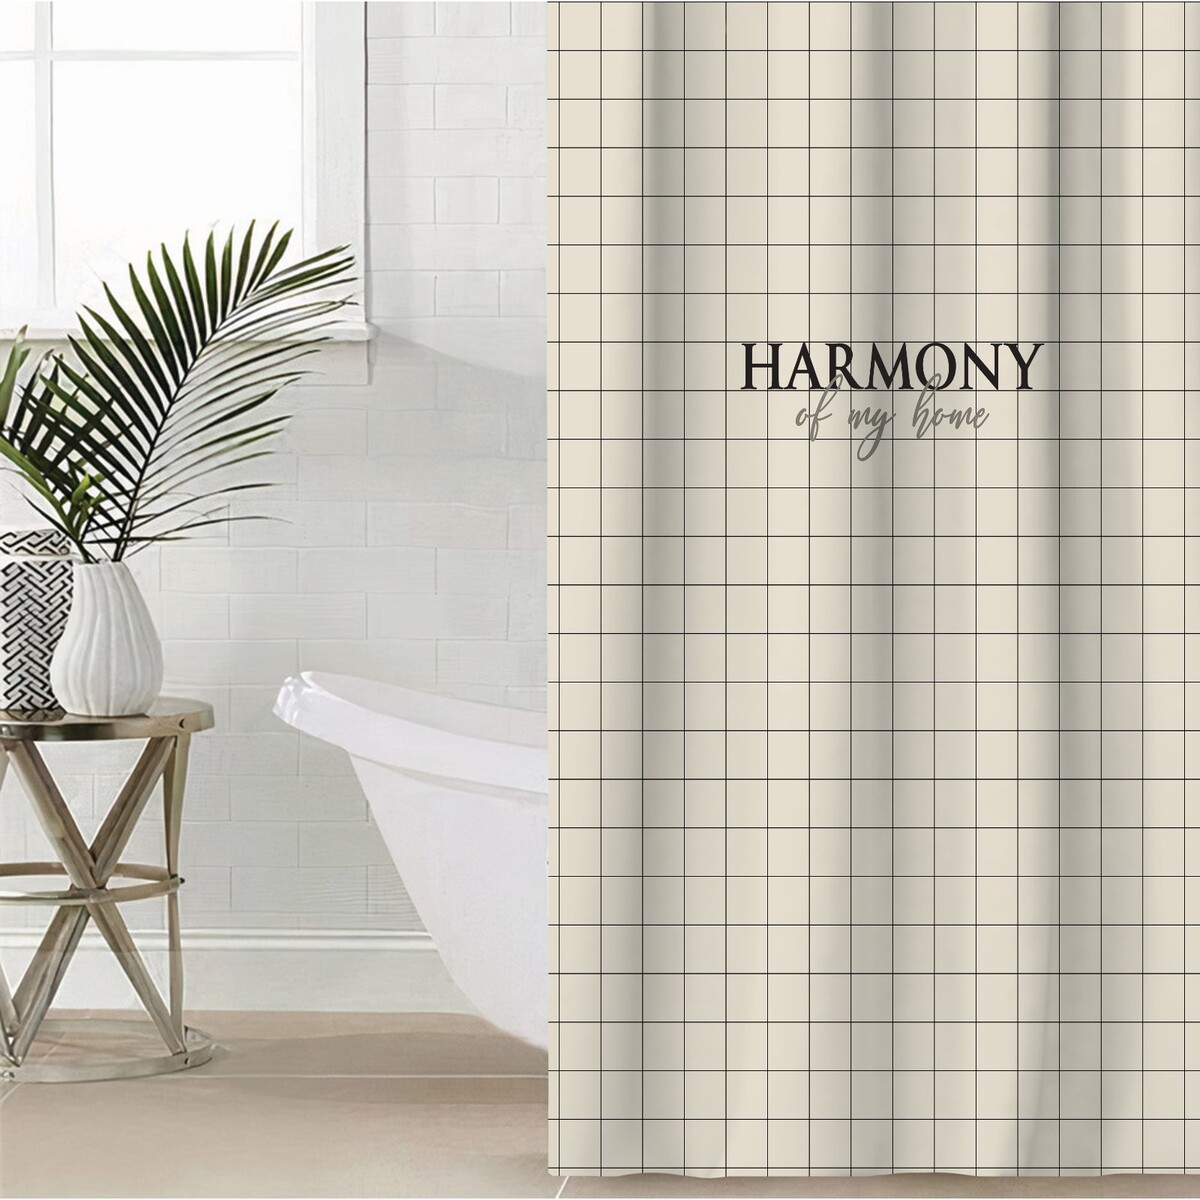     harmony 145  180 , 